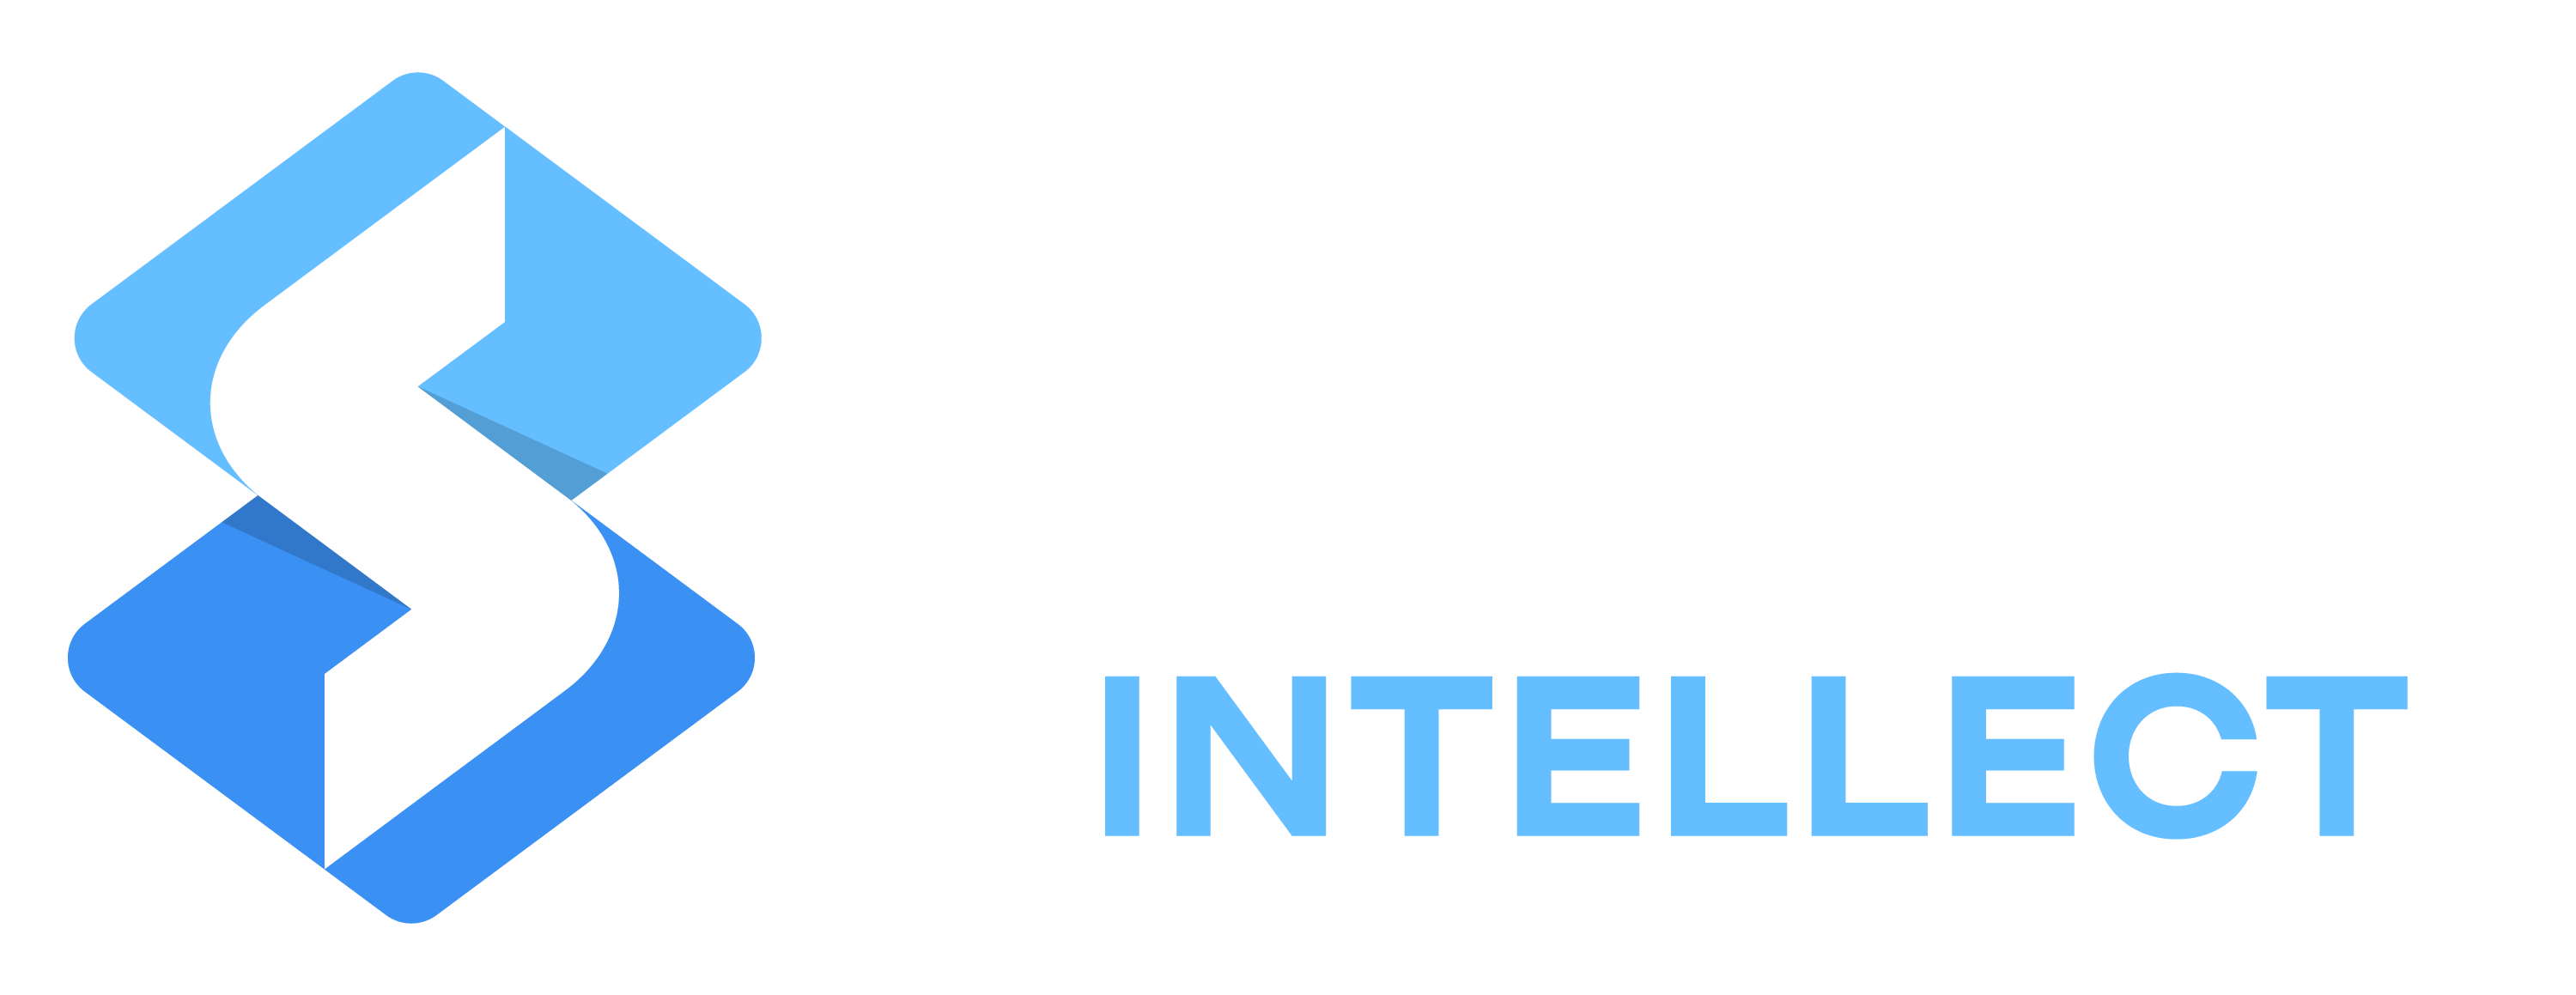 Swift Intellect